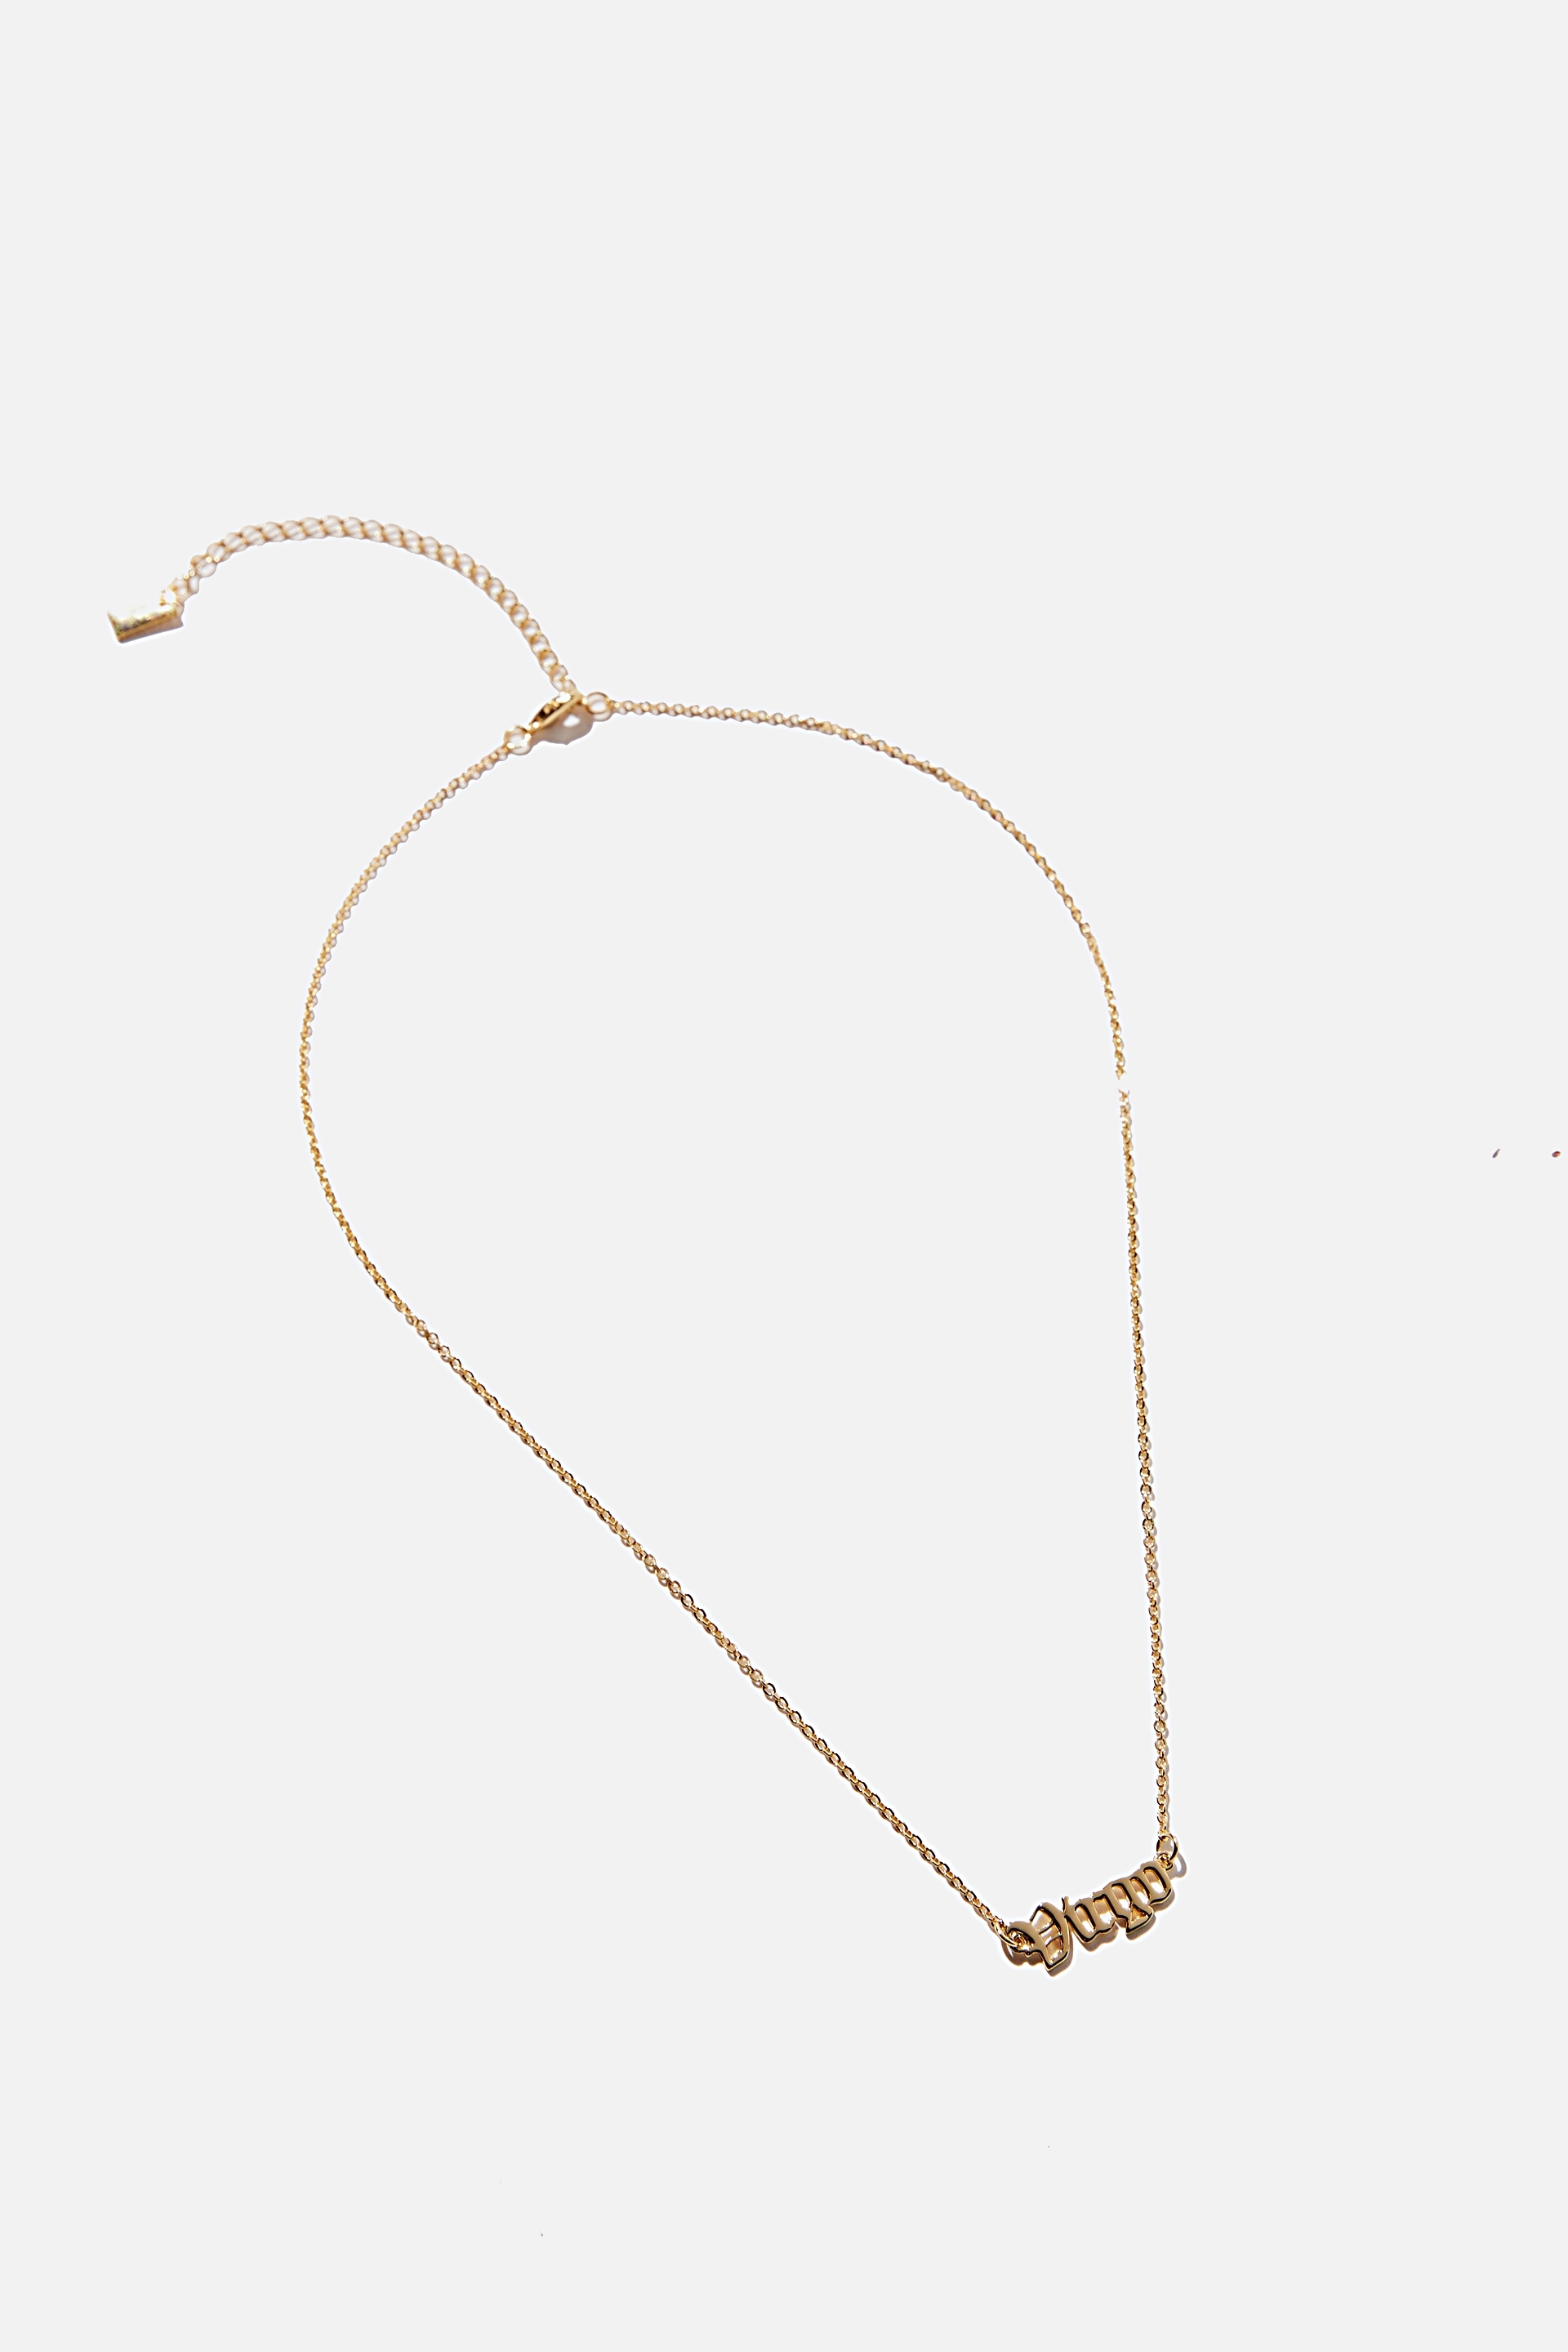 Rubi - Premium Pendant Necklace - Gold plated virgo